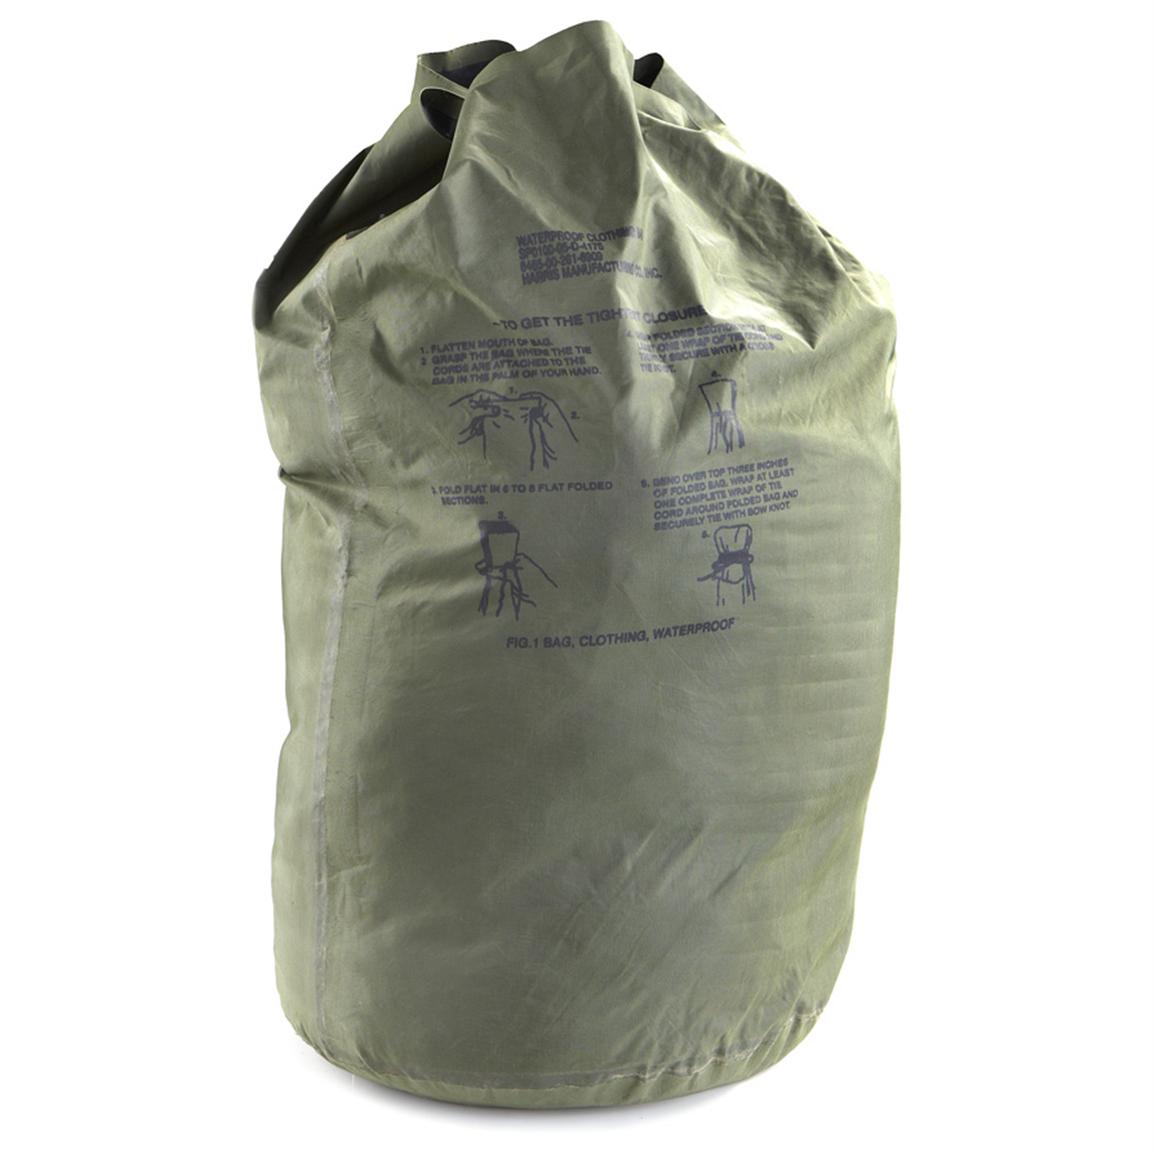 Bag Clothing Waterproof 6909